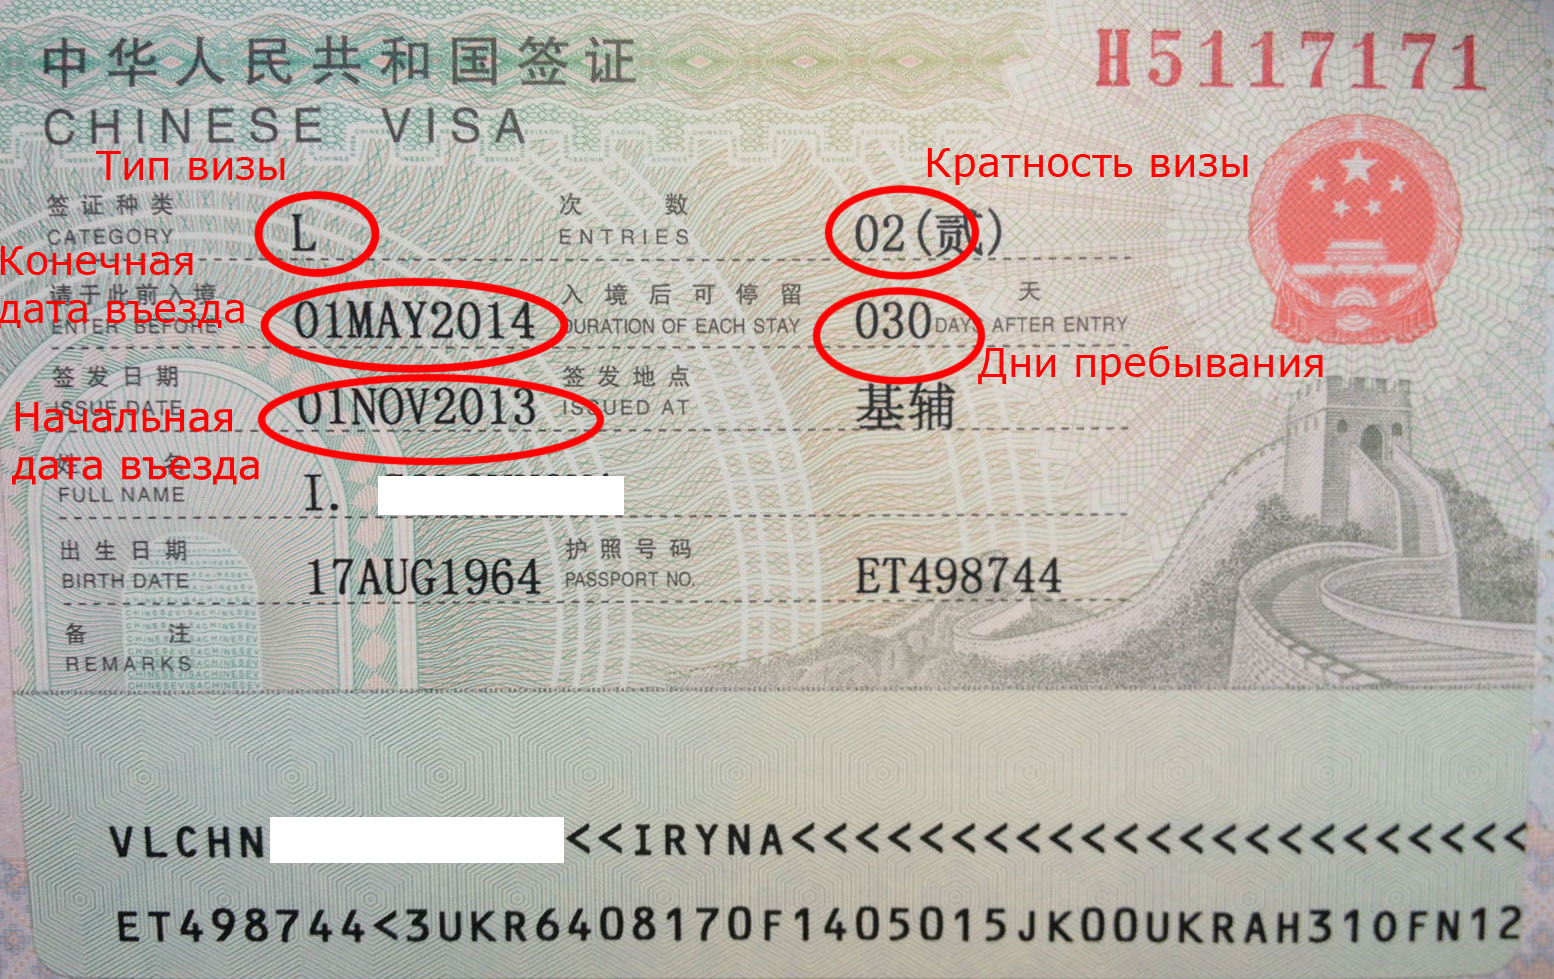 Как получить визу в китай украинцам в 2021 году — все о визах и эмиграции